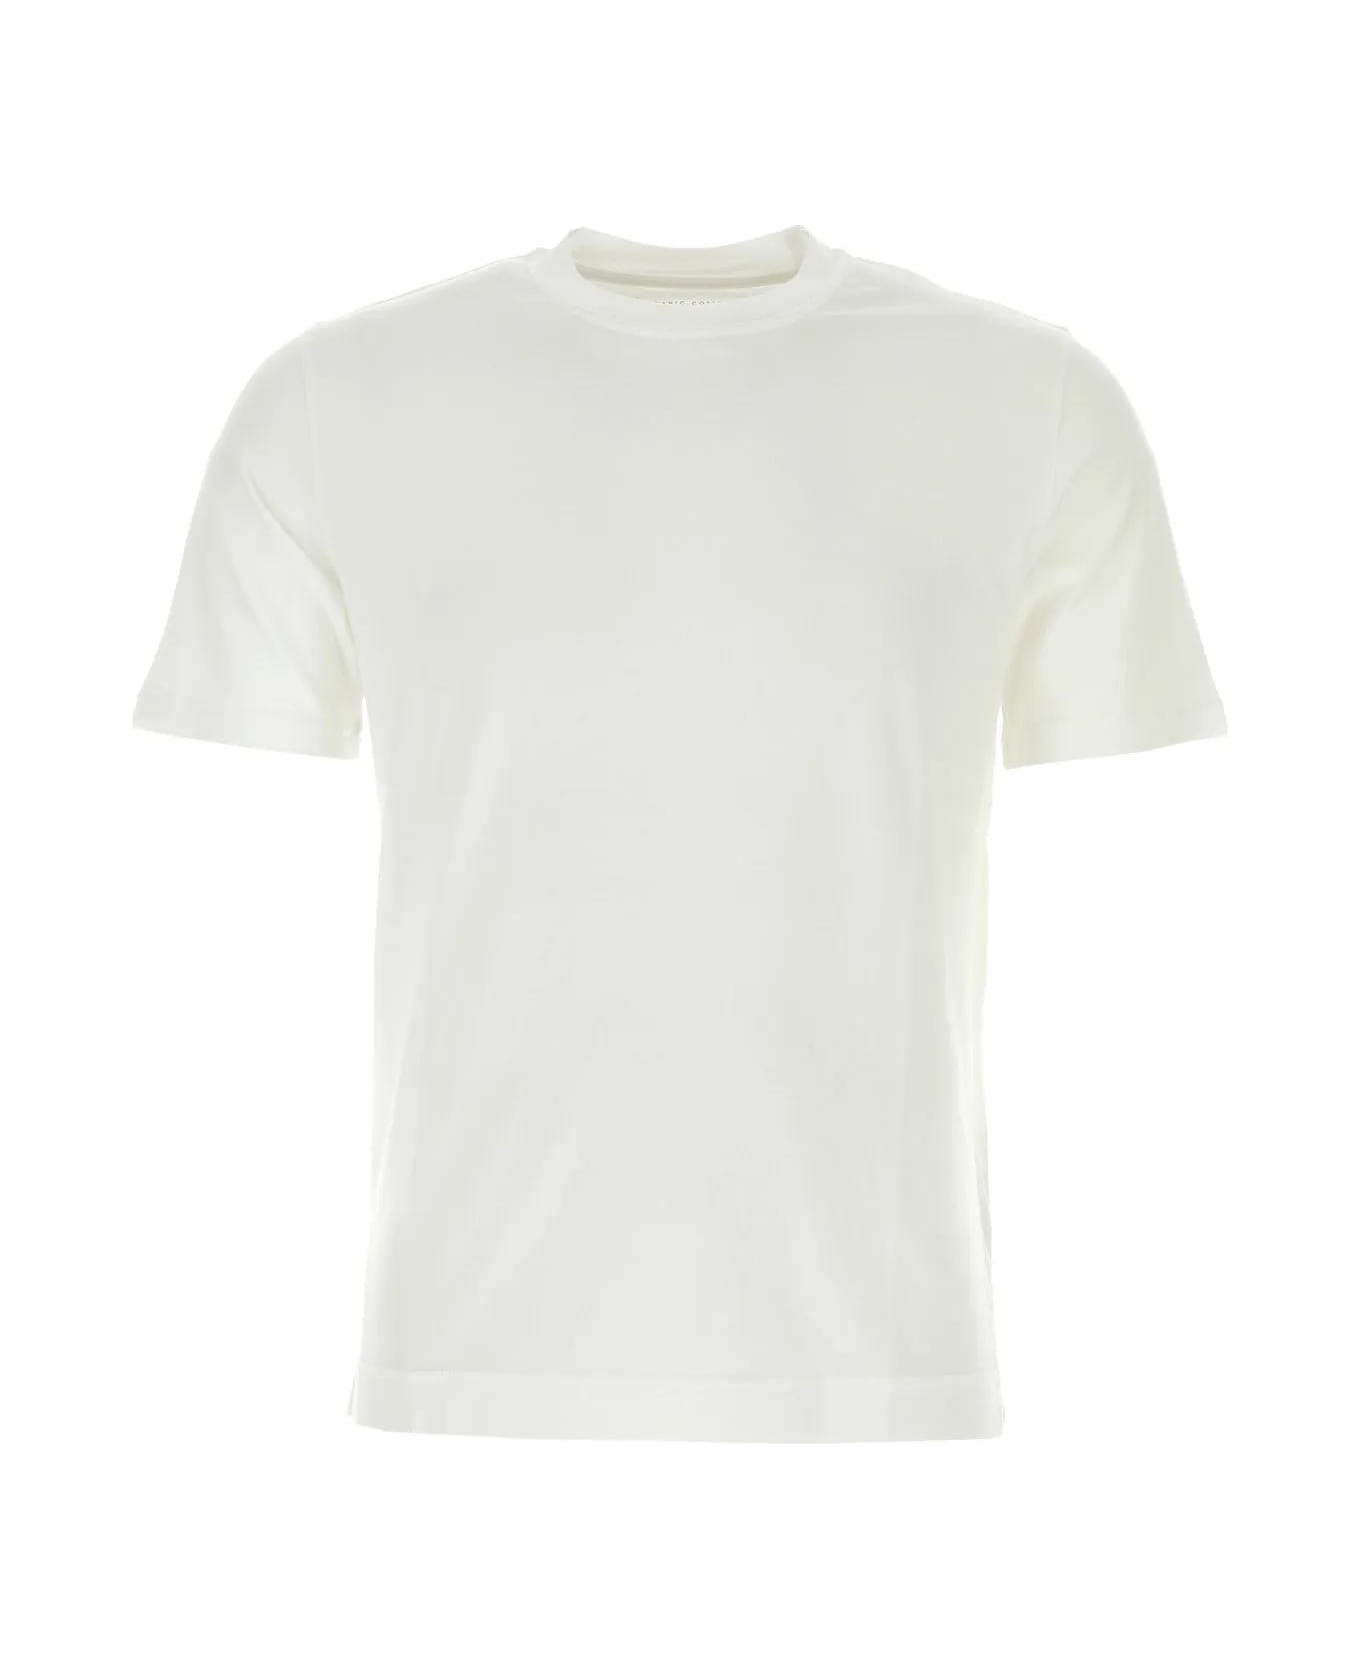 Fedeli White Cotton T-shirt シャツ